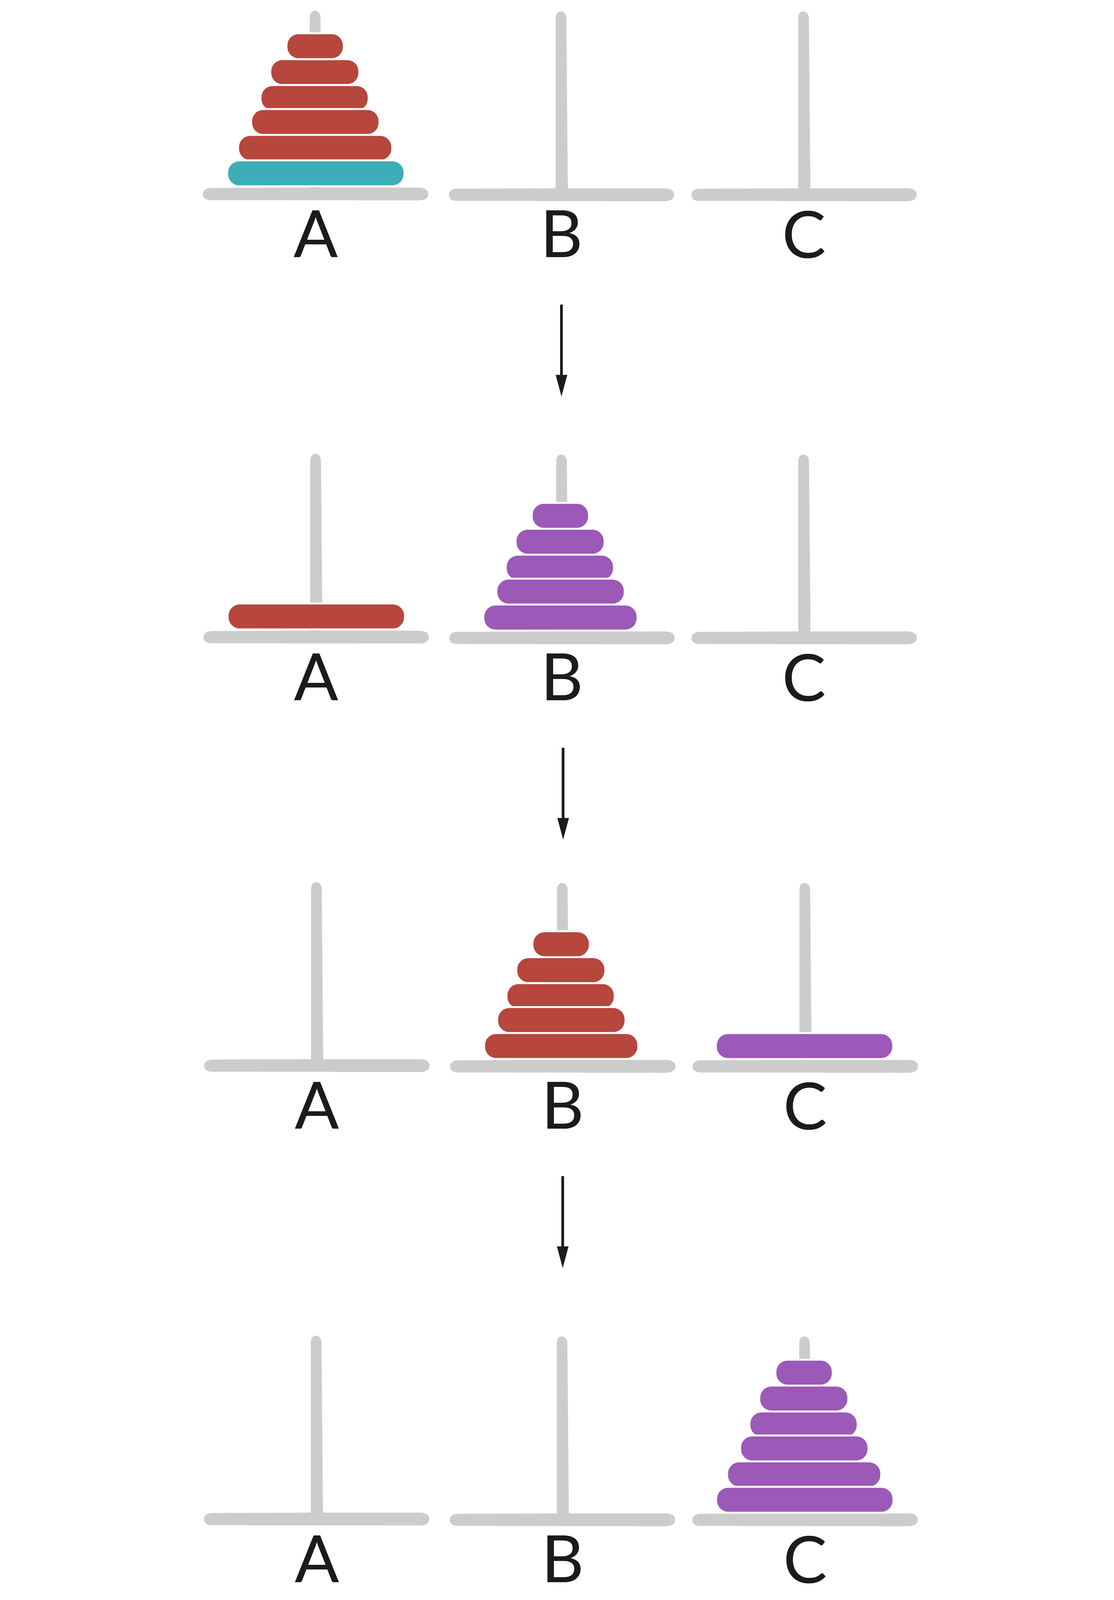 Ilustracja przedstawia cztery rzędy słupków.  W każdym rzędzie znajdują się trzy słupki o oznaczeniach A, B, C.   1. Wszystkie krążki znajdują się na słupku A, w kolejności od najmniejszego do największego.  2. Krążek największy znajduje się na słupku A, reszta krążków znajduje się na słupku B w kolejności od najmniejszego do największego.  3. Krążek największy znajduje się na słupku C, reszta krążków znajduje się na słupku B w kolejności od najmniejszego do największego.  4. Wszystkie krążki znajdują się na słupku C w kolejności od najmniejszego do największego. 